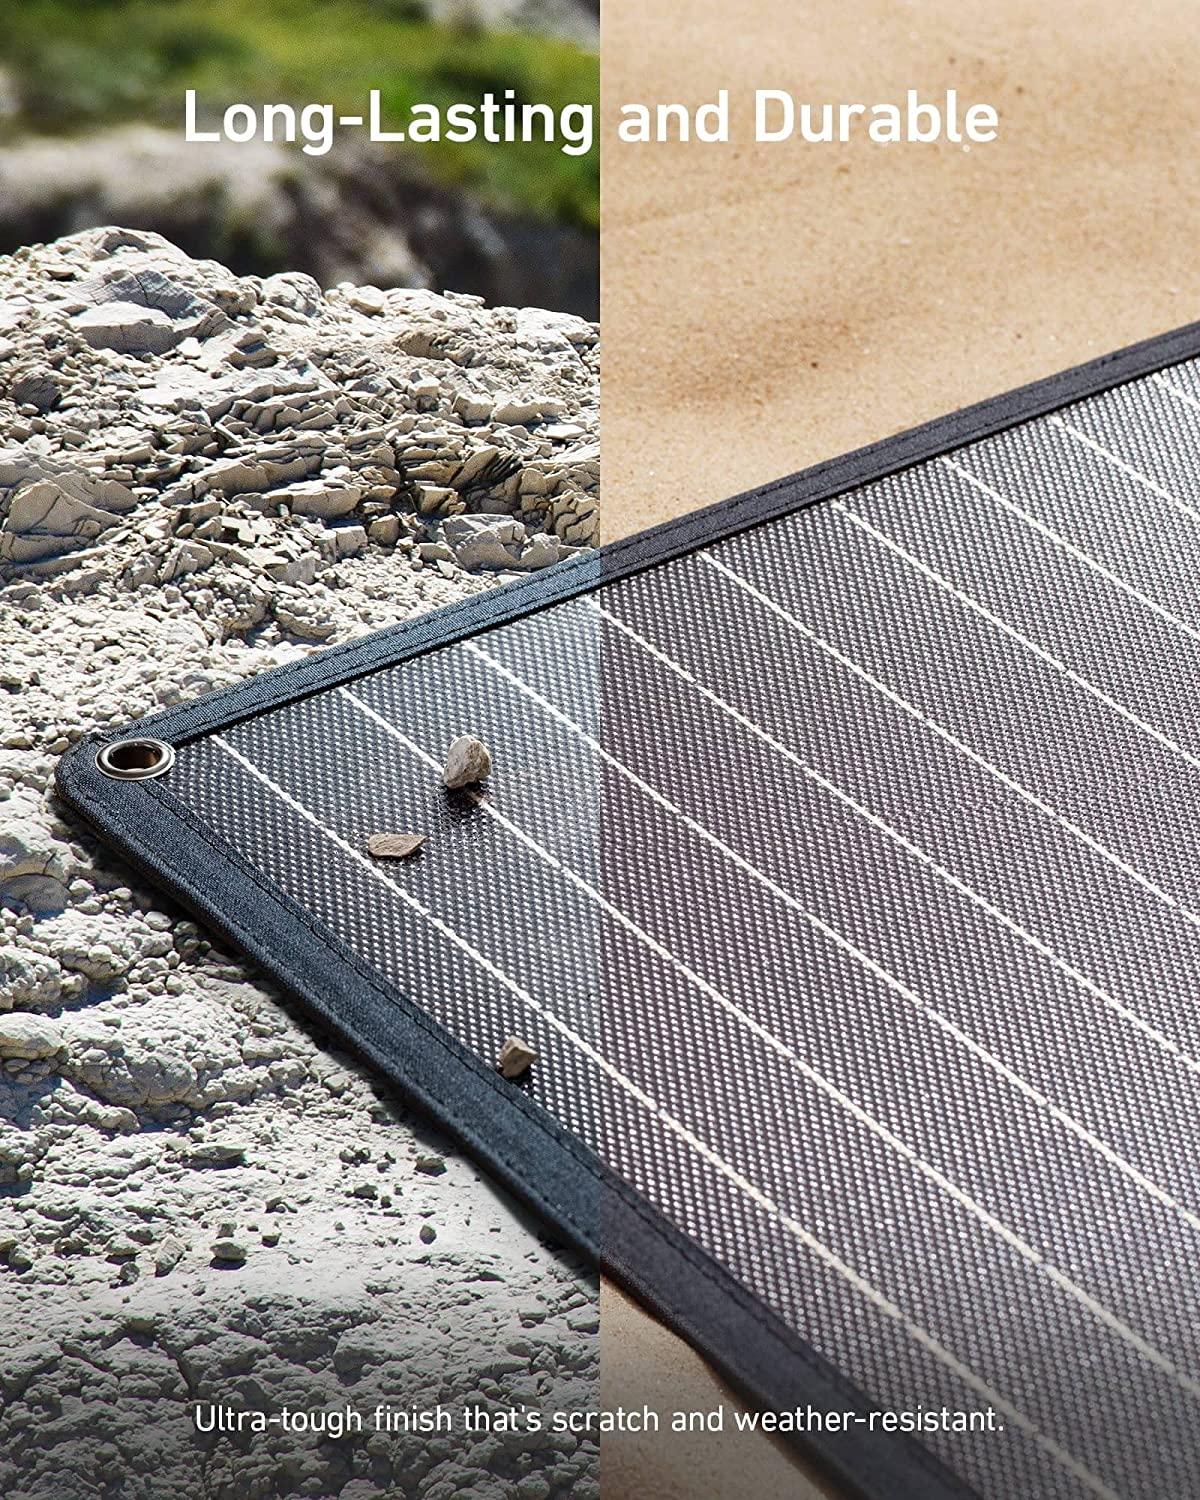 لوح طاقة شمسية 100 واط أنكر Anker 625 Solar Panel With Adjustable KickStand - cG9zdDo5Nzc0NDE=